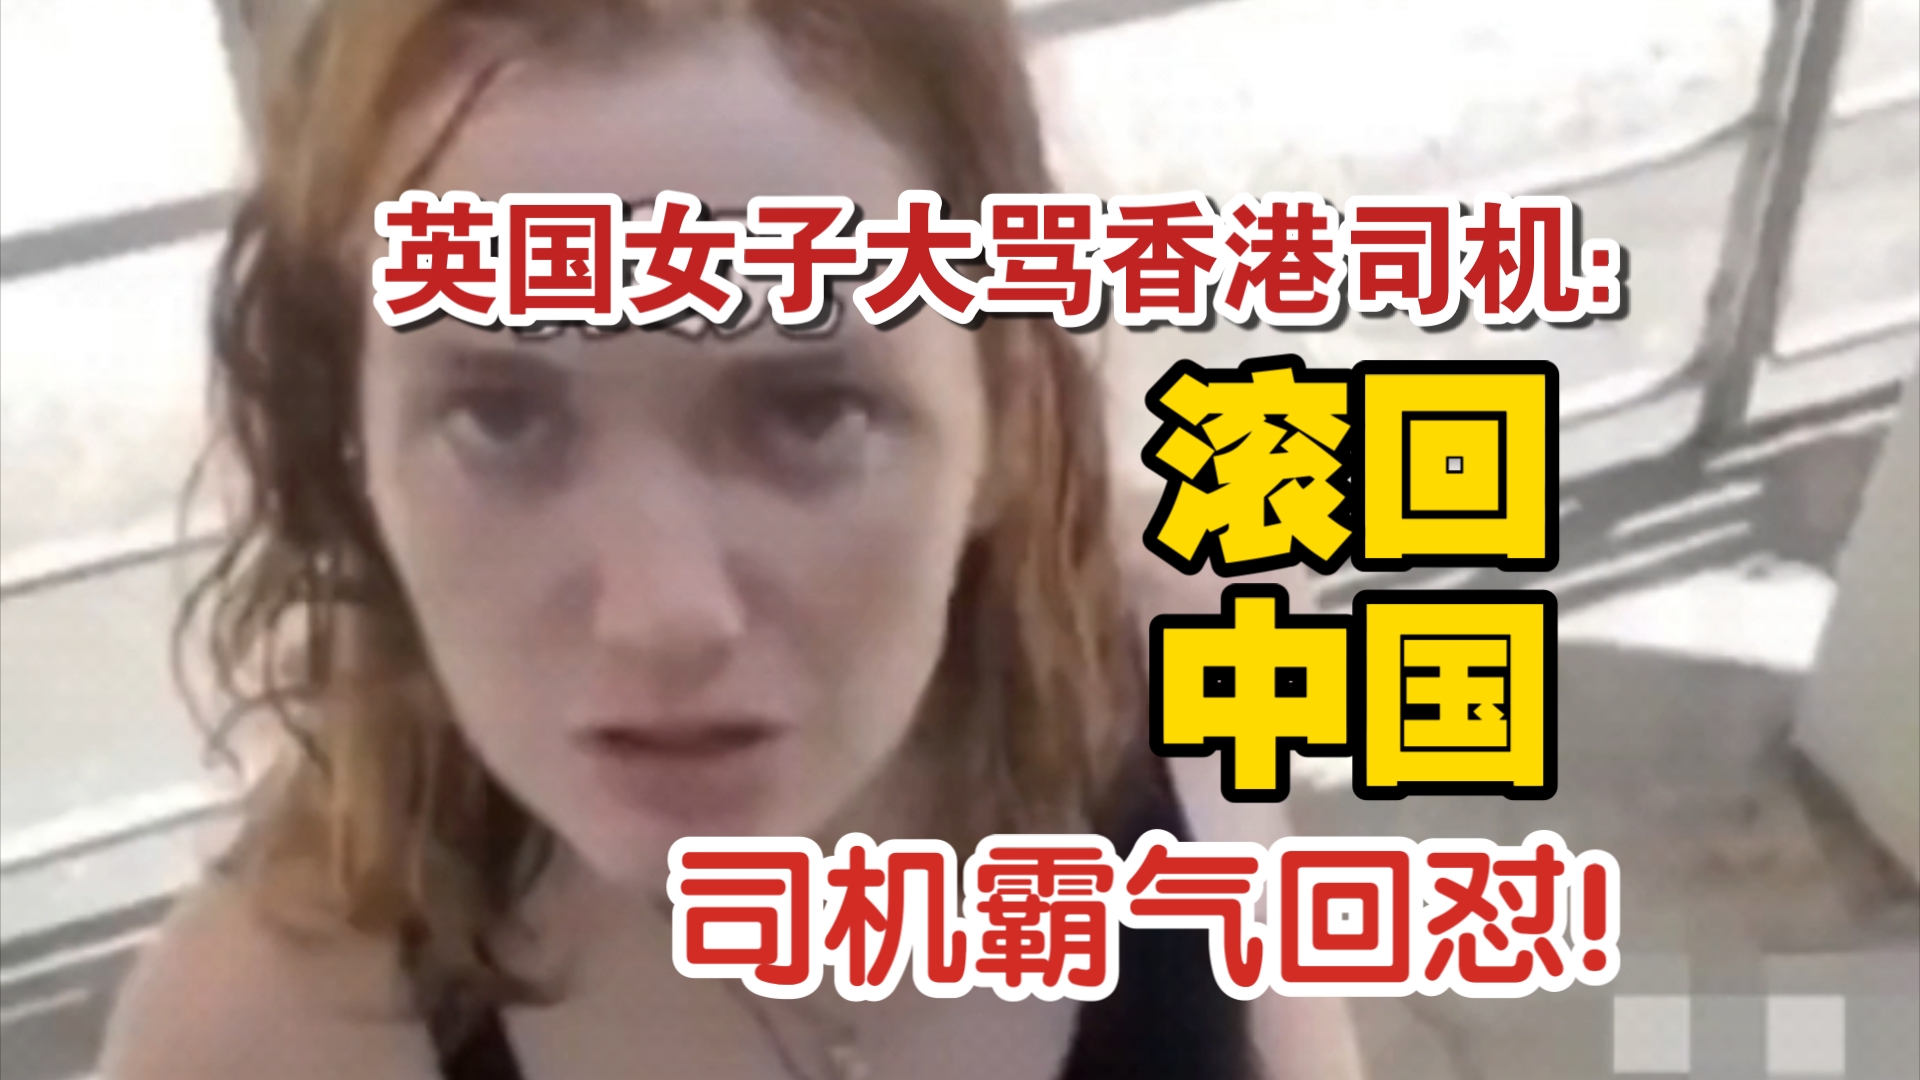 英国女子大骂香港司机:滚回中国,香港司机回怼:这就是